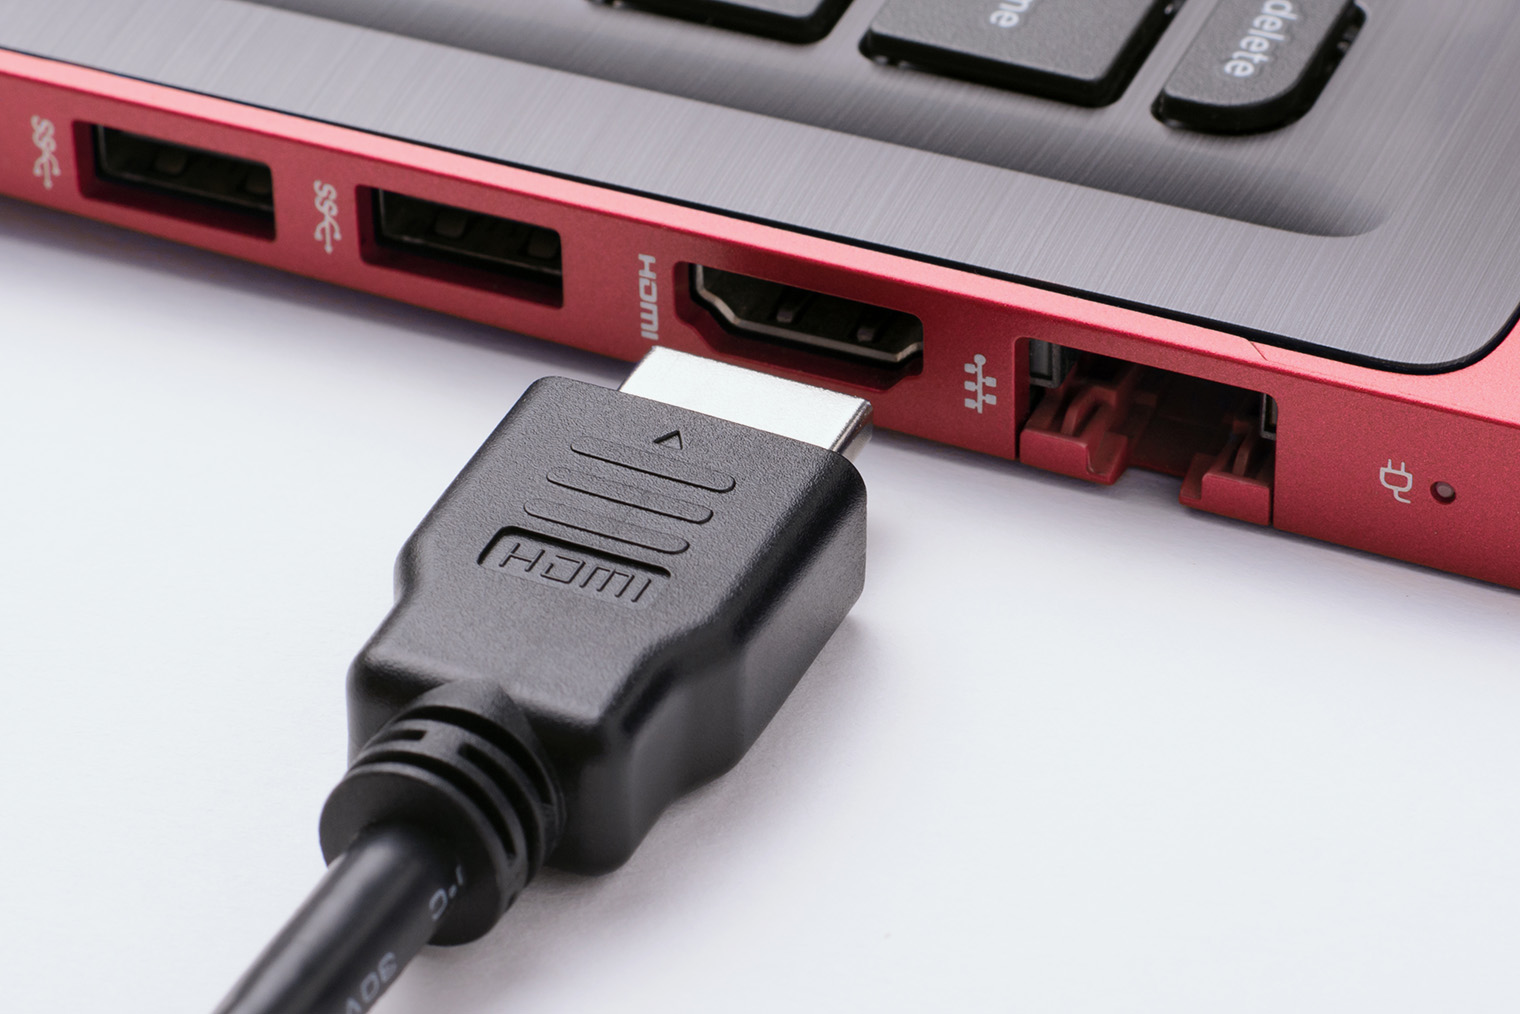 Порт HDMI — самый универсальный и распространенный из всех. Фотография: Vitalii Stock / Shutterstock / FOTODOM